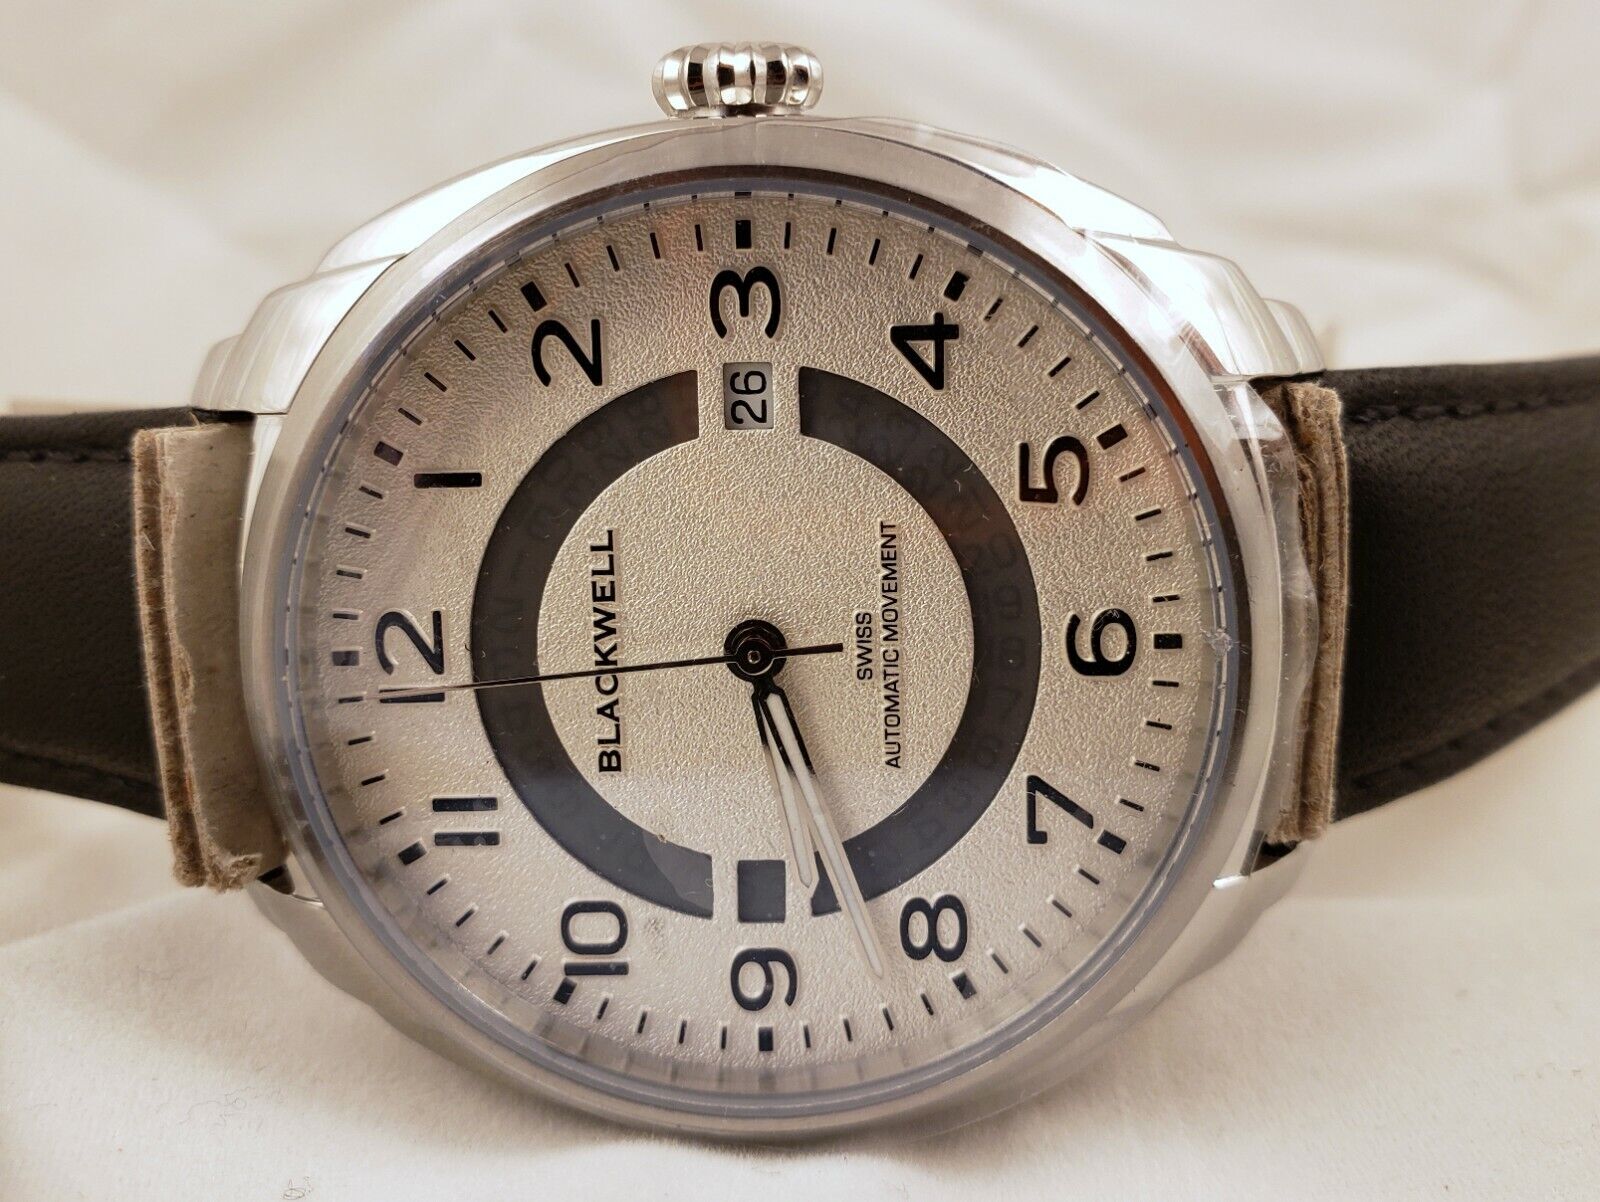 Blackwell Hampton Automatic Watch - Swiss Made Movement